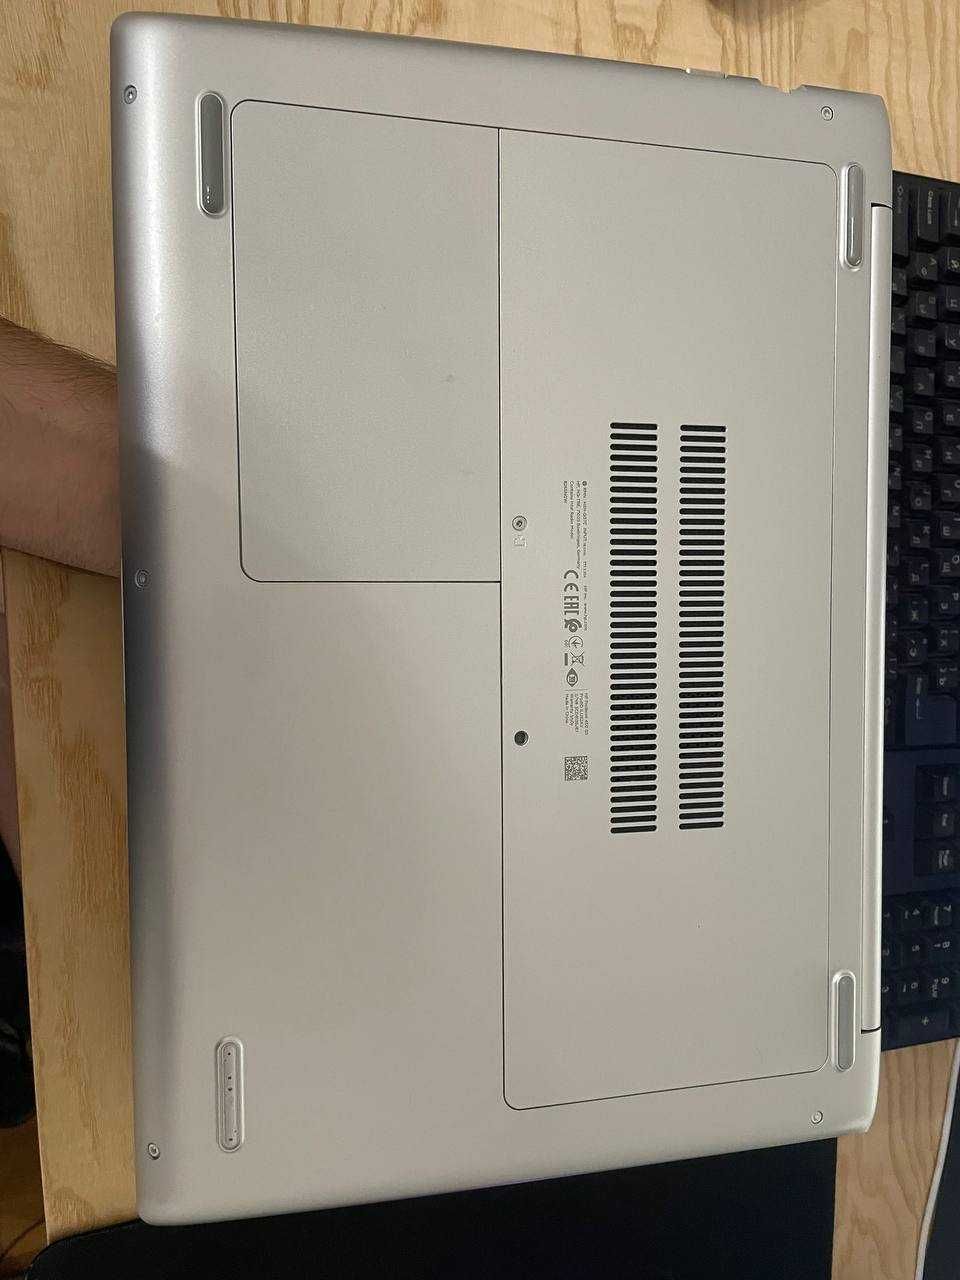 HP ProBook 450 G5 Silver i7 8550U 1.8Ghz / 8Gb / 256Gb SSD